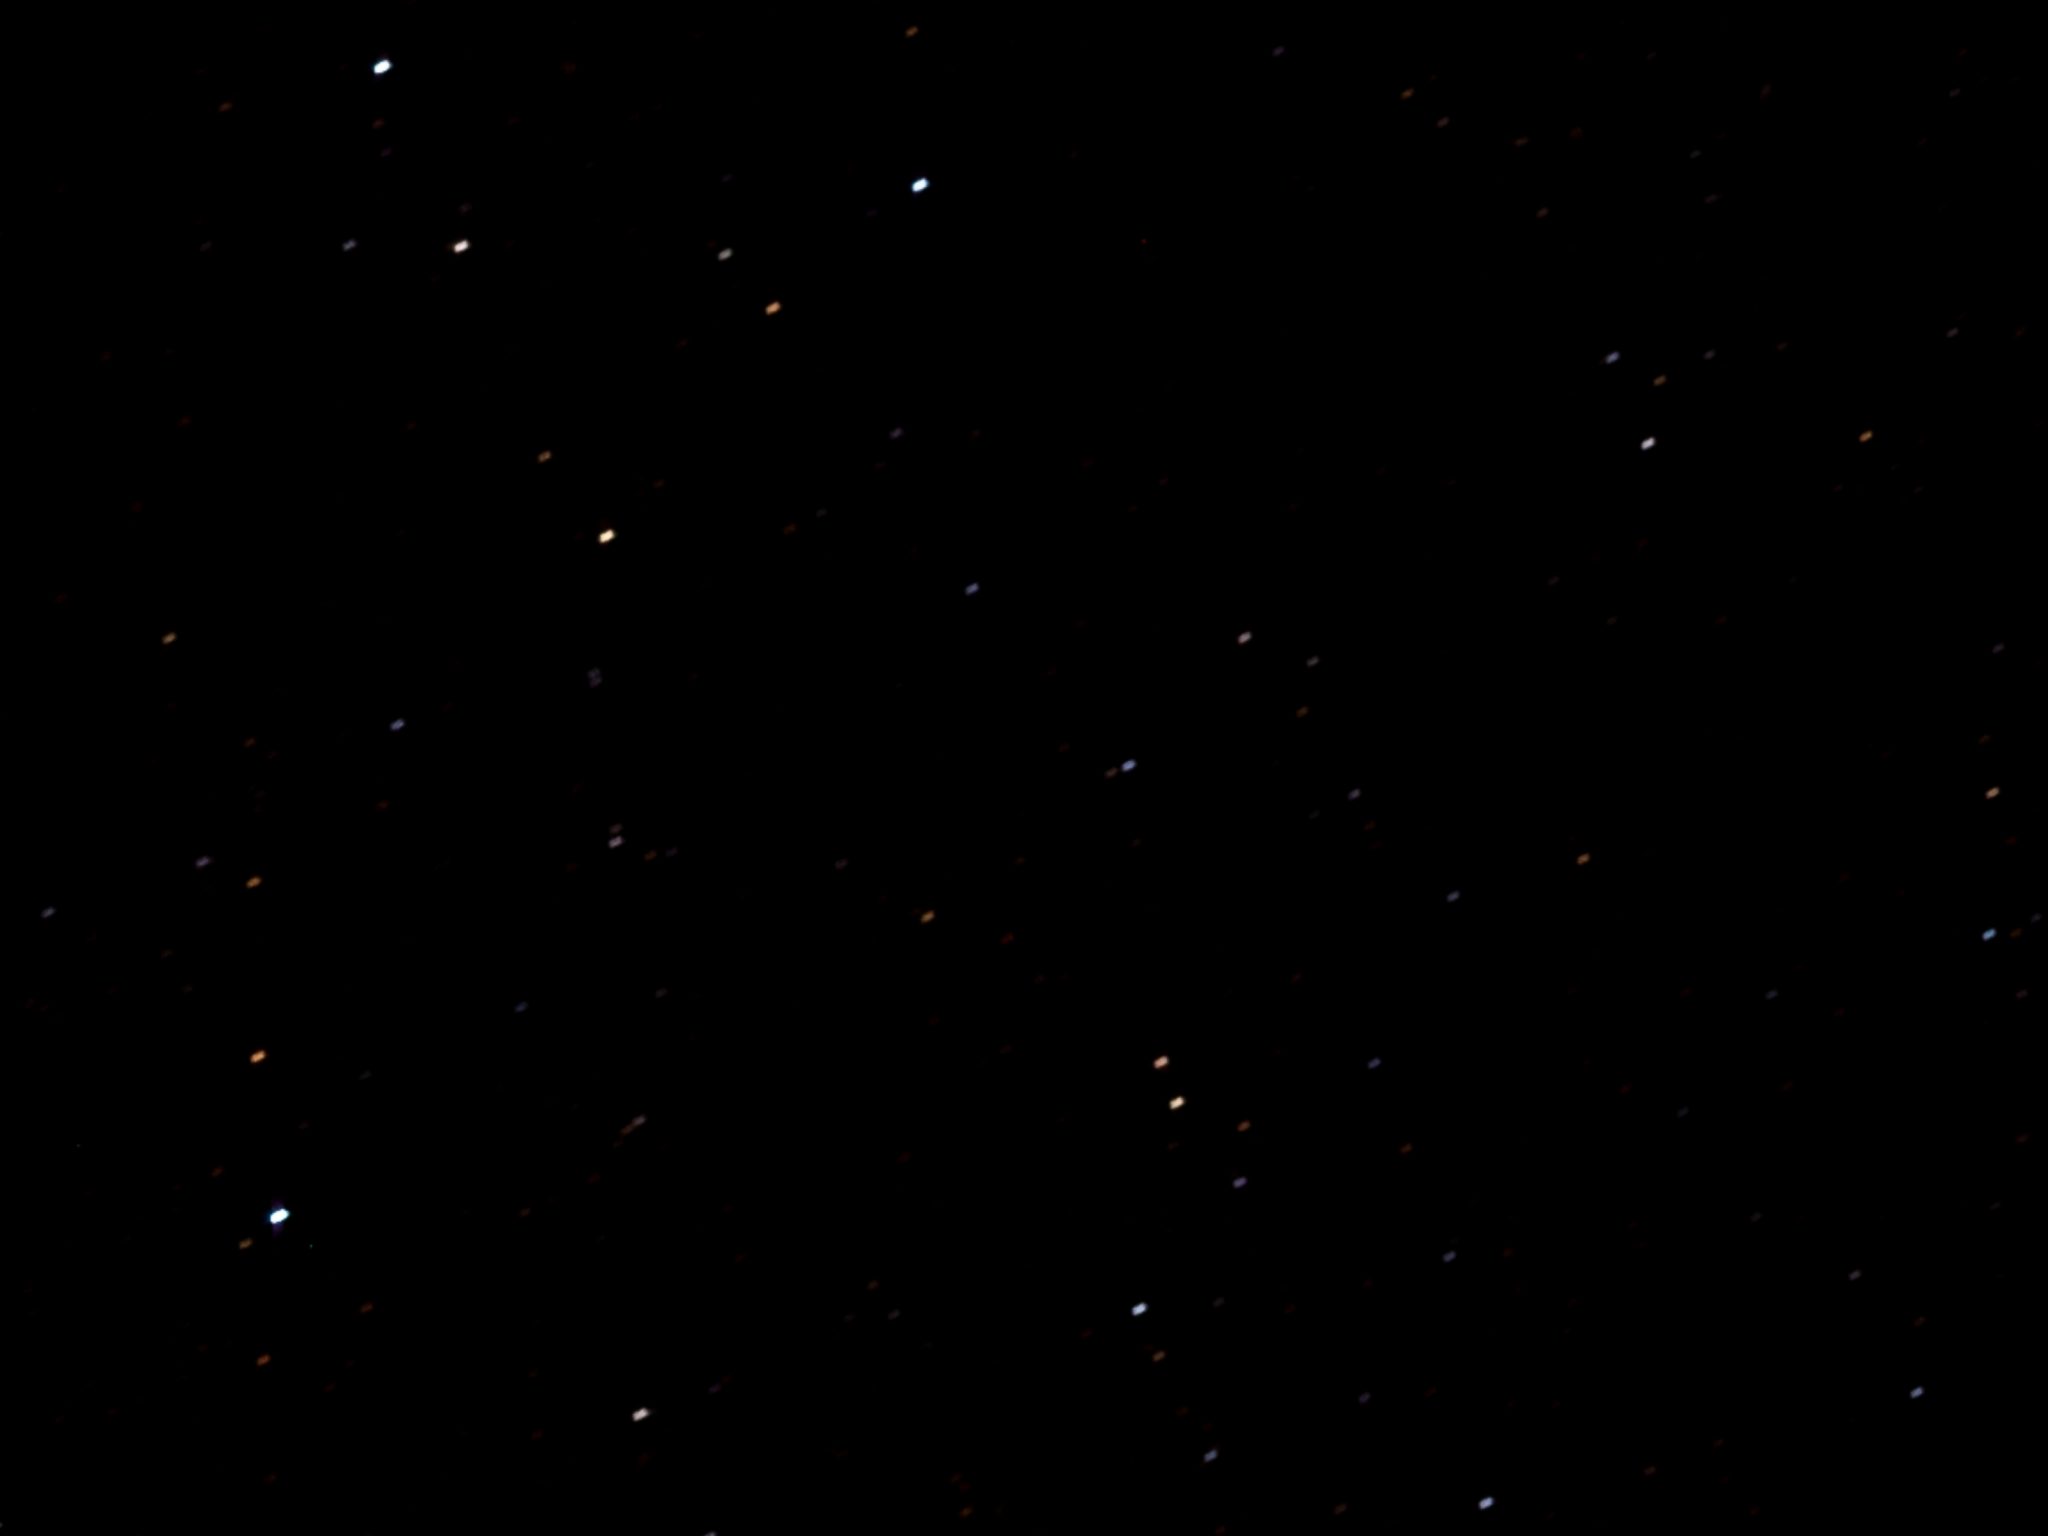 2048x1536 wallpaper Dark Sky Stars Galaxy iPad Wallpaper 2048x1536 pixels resolution